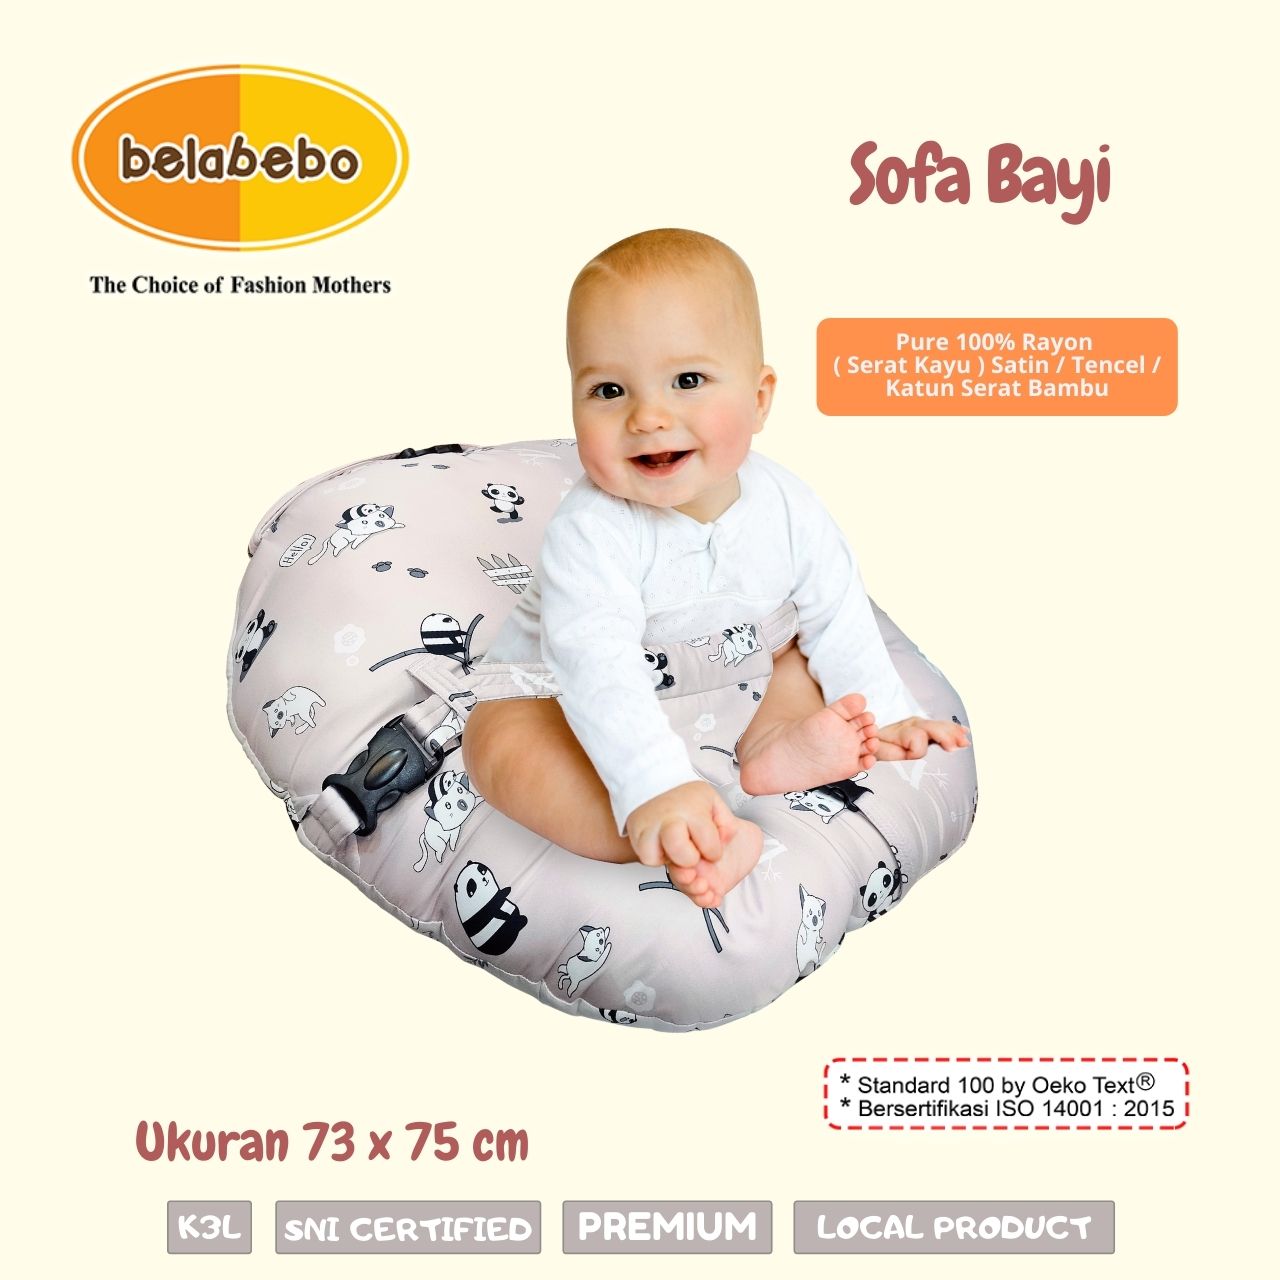 Sofa Bayi untuk bayi bersantai